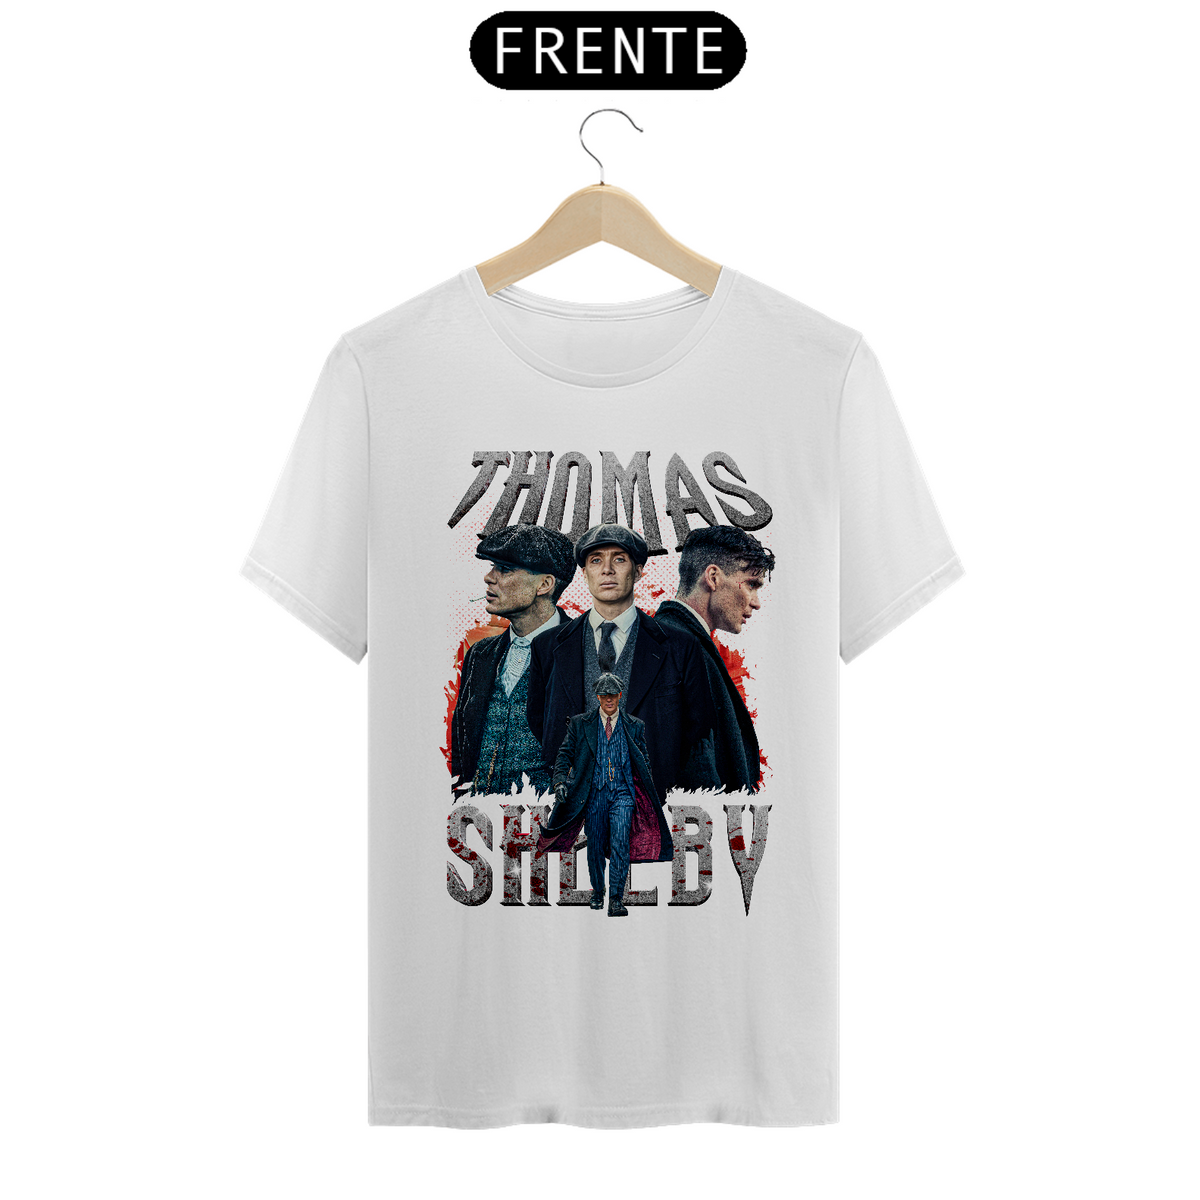 Nome do produto: Camiseta Básica - Thomas Shelby